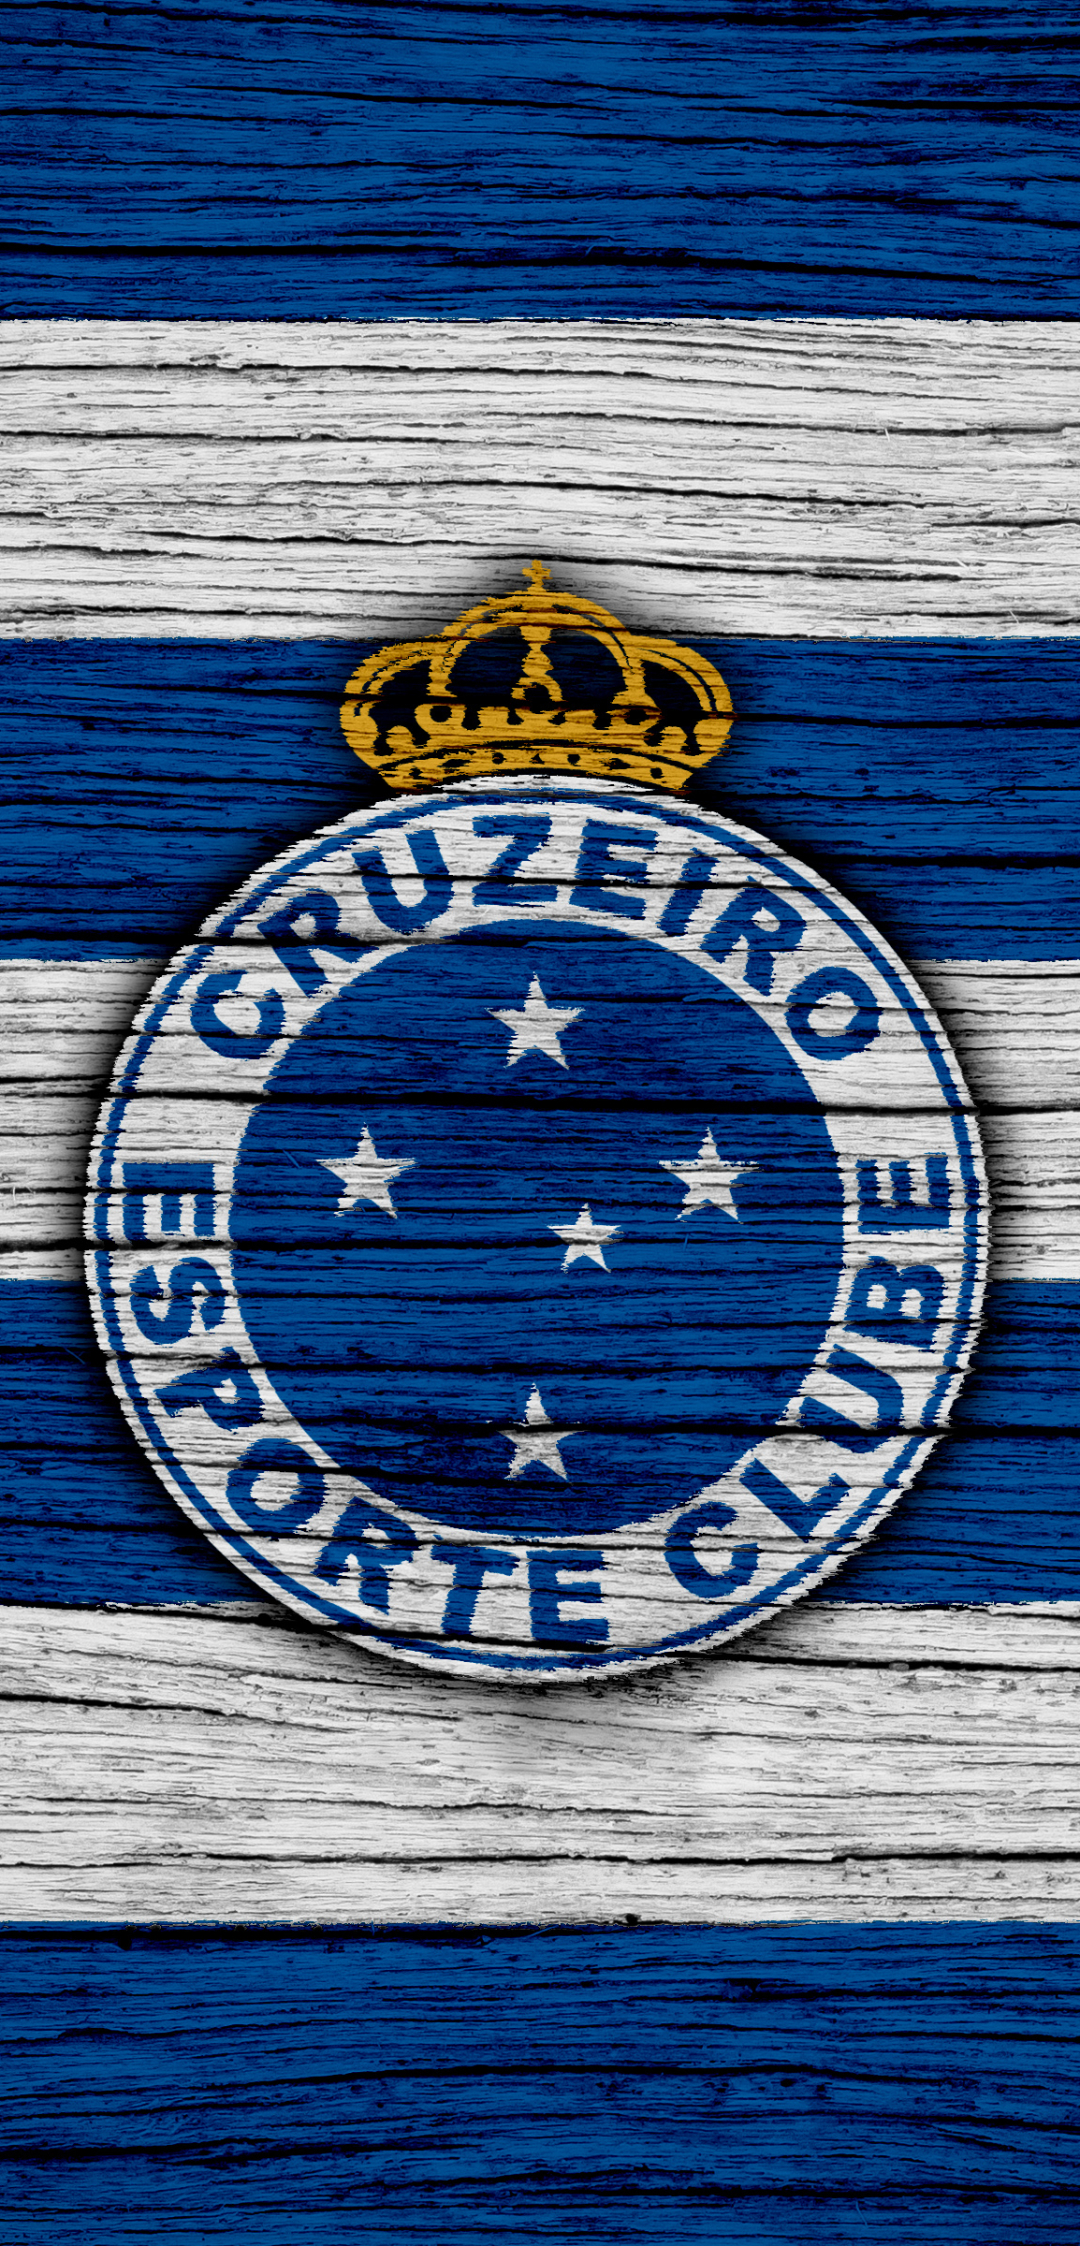 Descarga gratuita de fondo de pantalla para móvil de Fútbol, Logo, Emblema, Deporte, Cruzeiro Esporte Club.